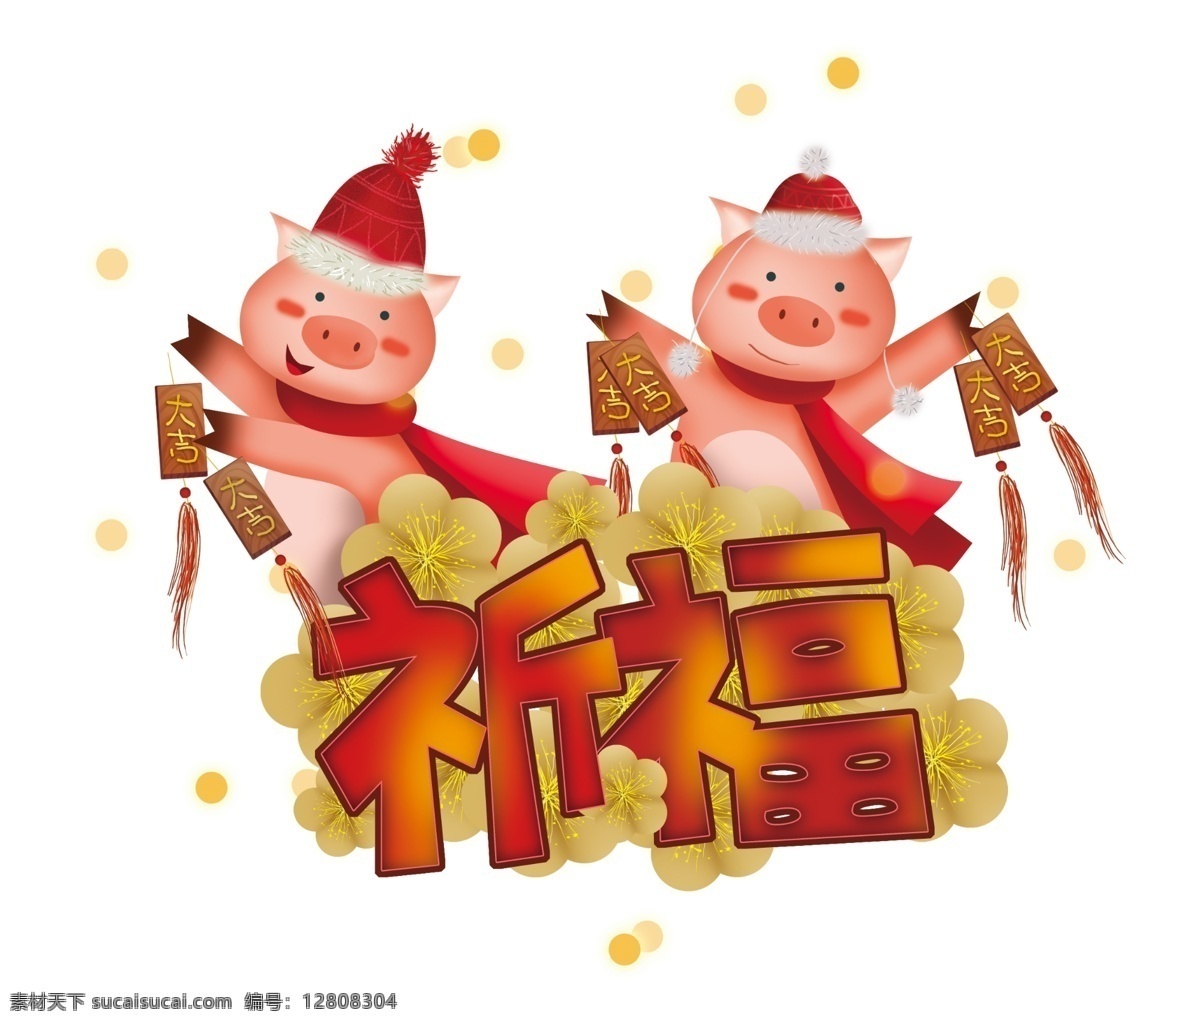 2019 年 新年 祈福 生肖 猪 农历新年 春节 中国风 小猪 新年大吉 新年红色 梅花 猪年 生肖猪 新年祈福